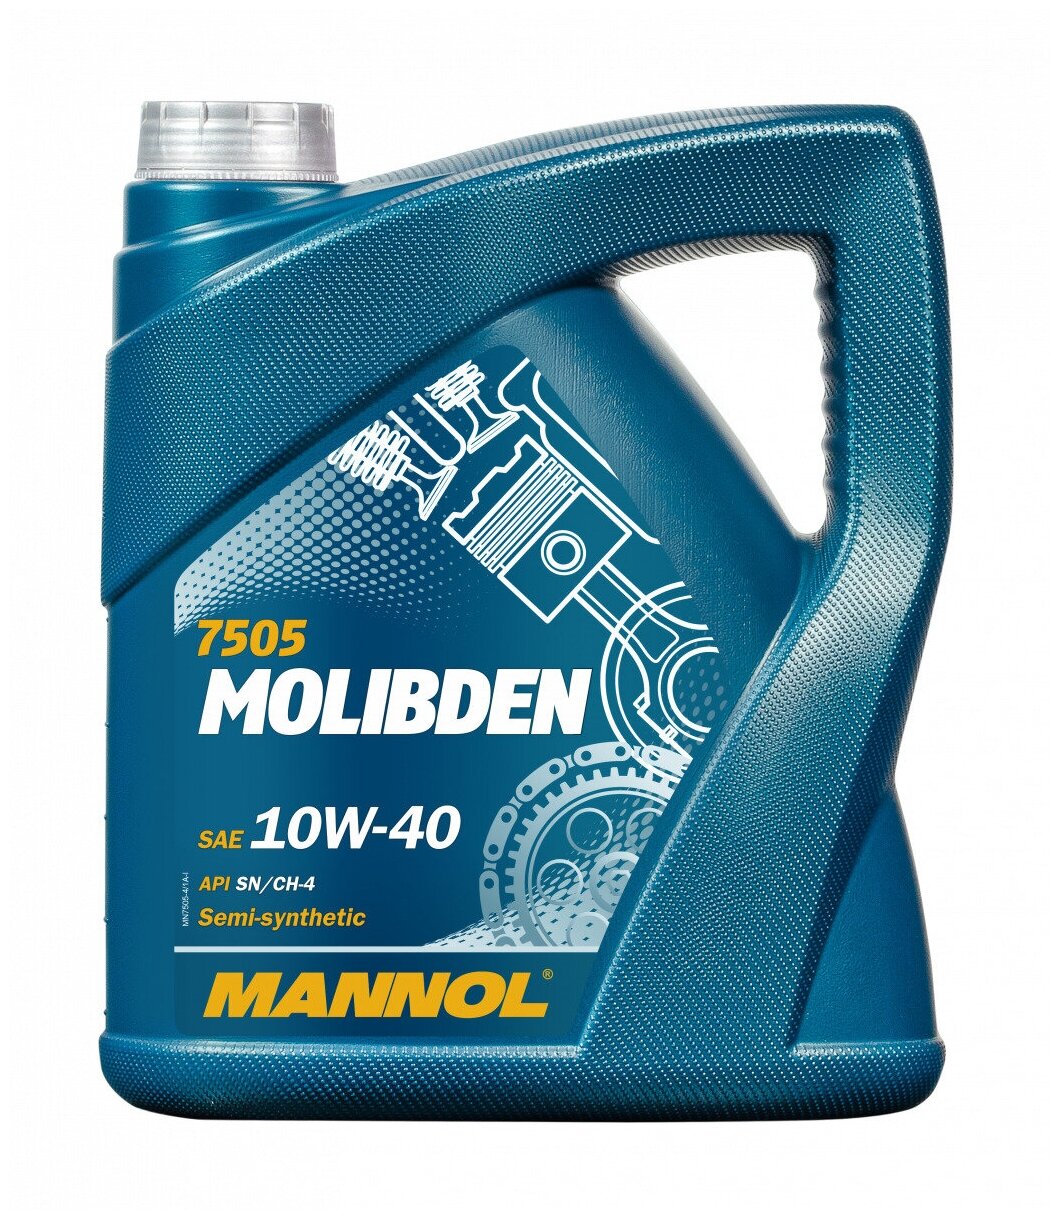 Масло моторное полусинтетическое Mannol Molibden 10W-40 4л